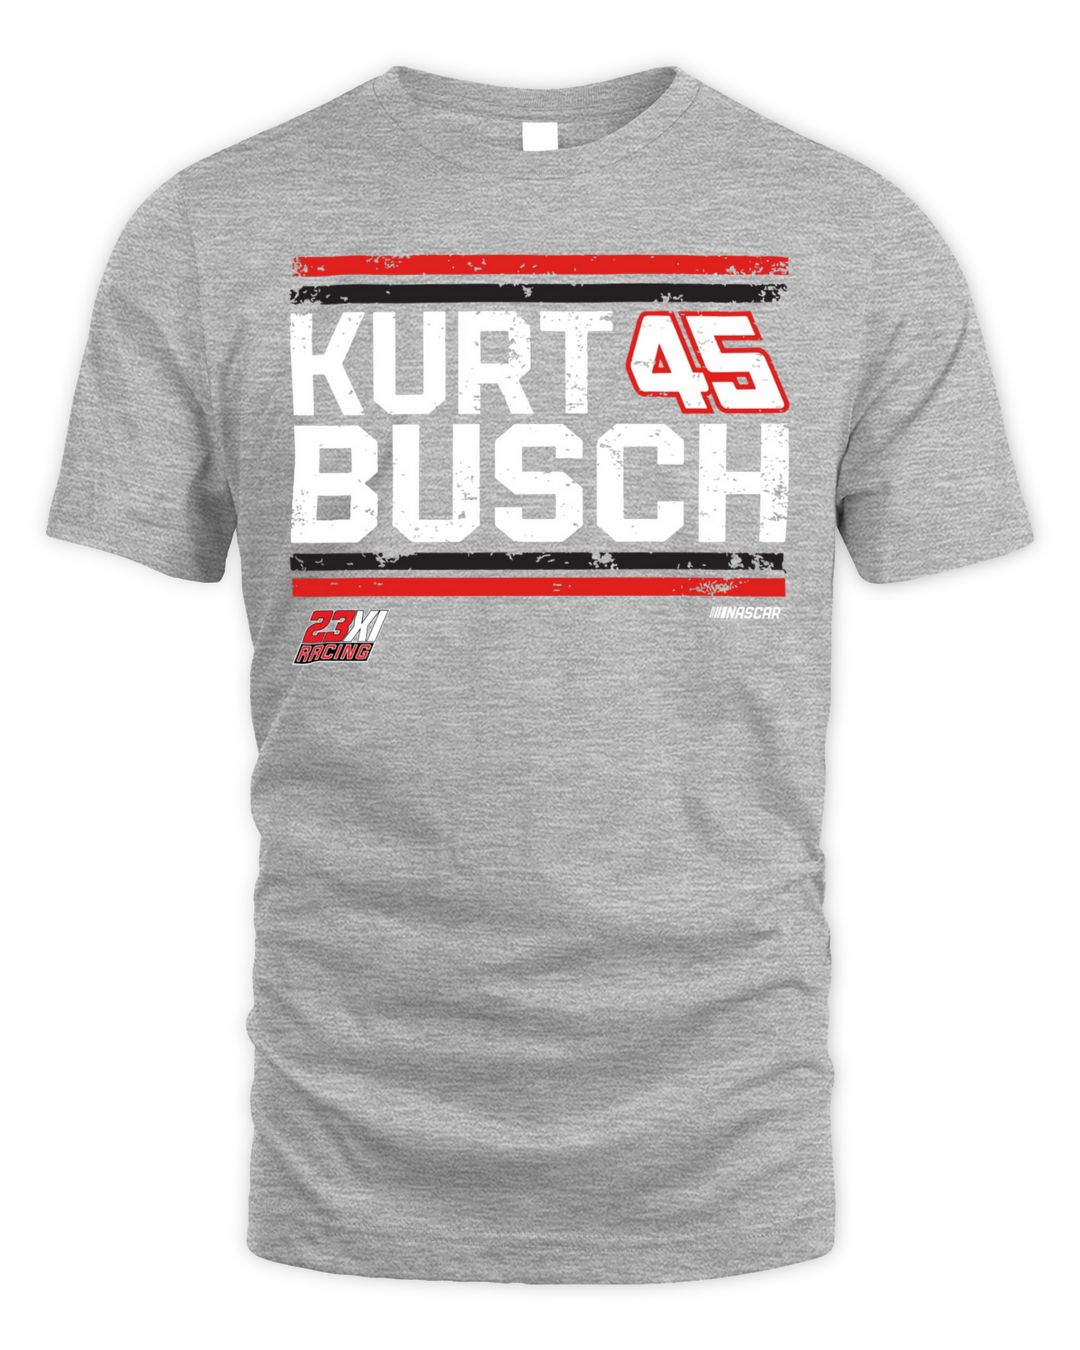 Kurt Busch 23XI Racing Restart Shirt